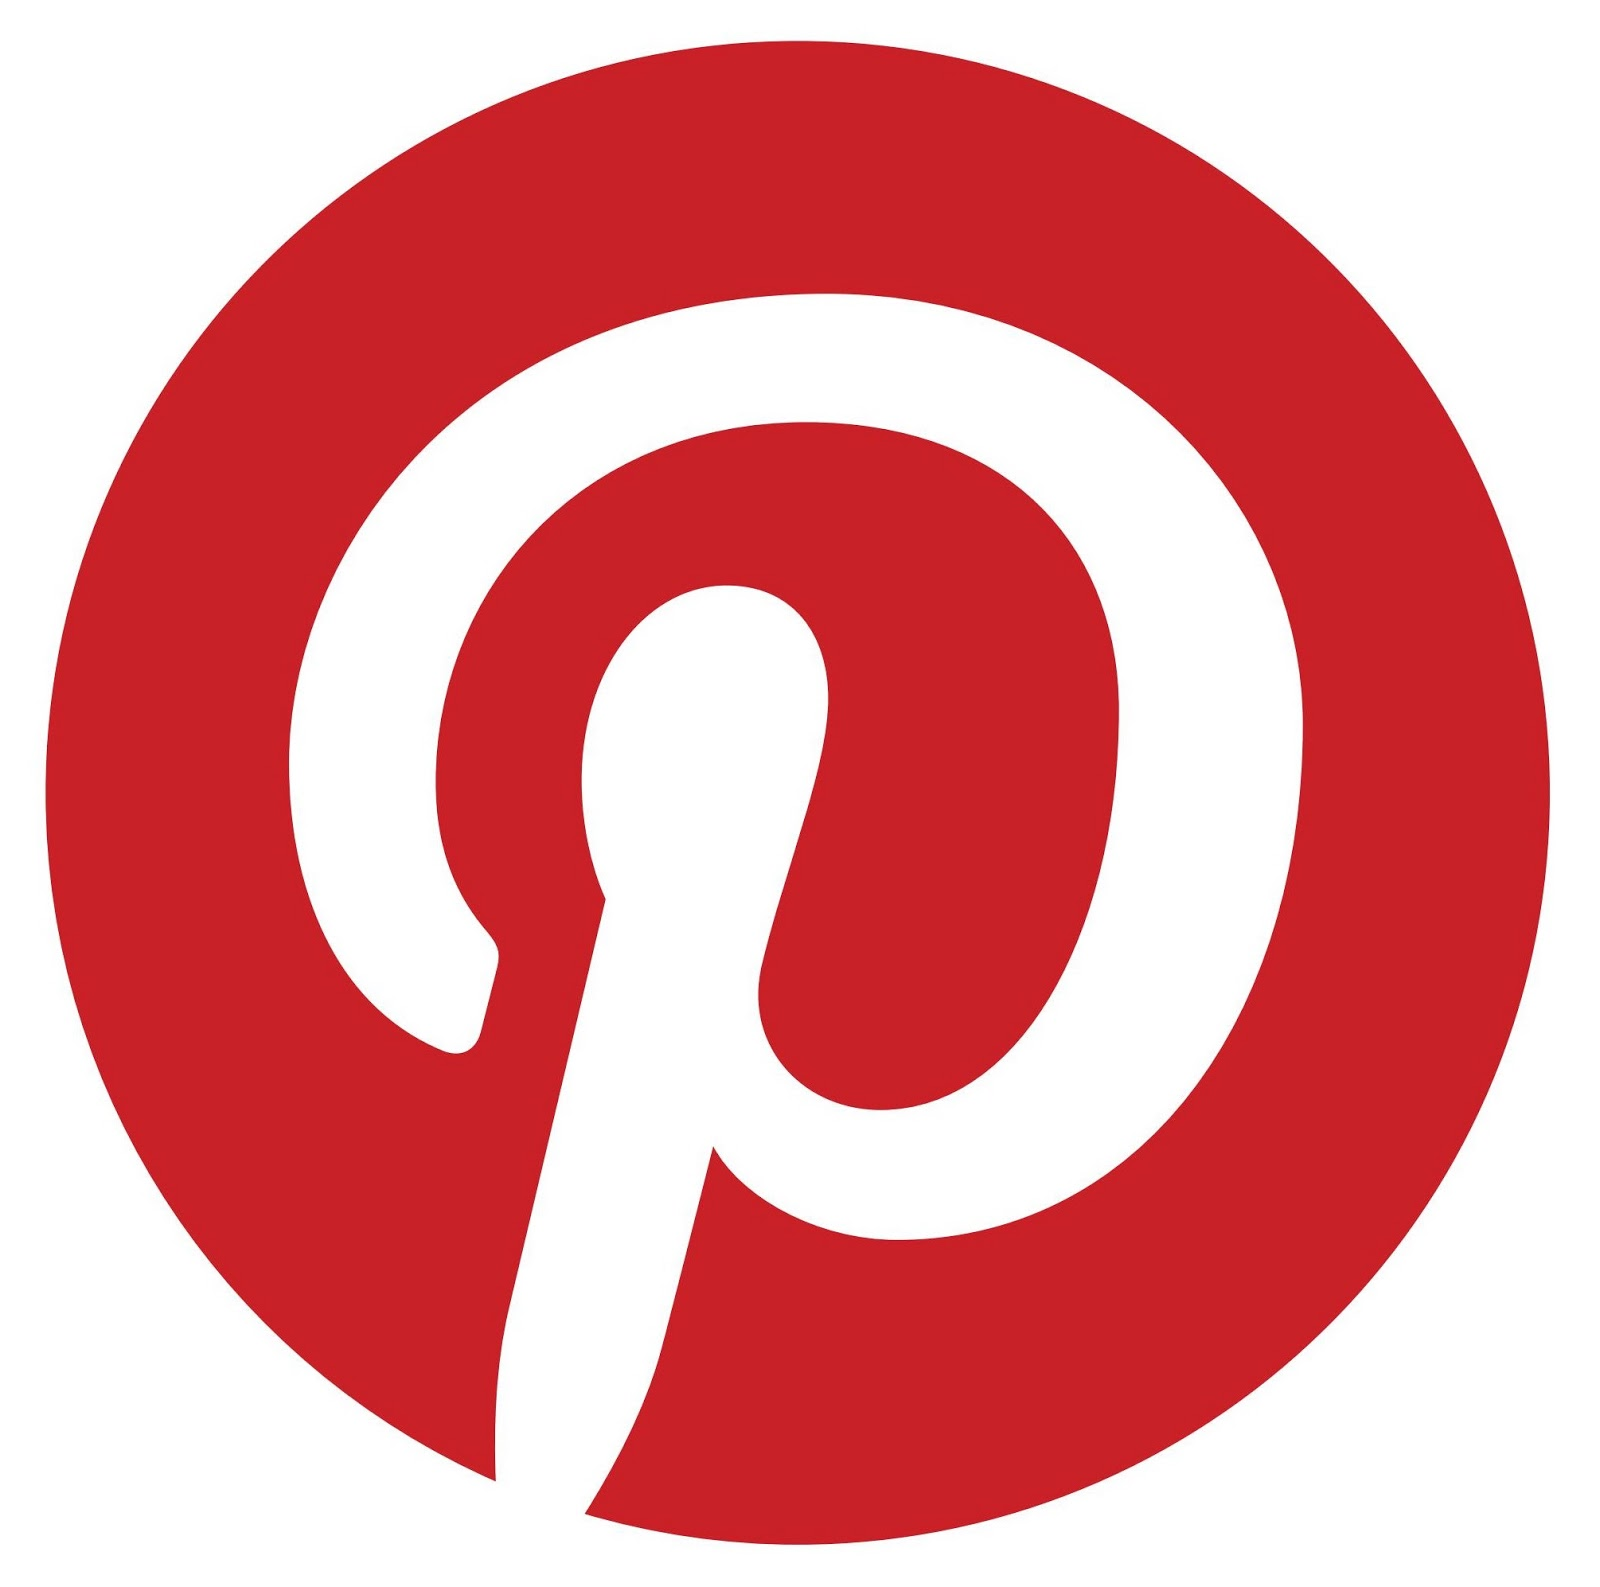 Para Pinterest Atracción de la atención de los usuarios y creación de una reputación online positiva gracias a la publicación de imágenes de calidad.